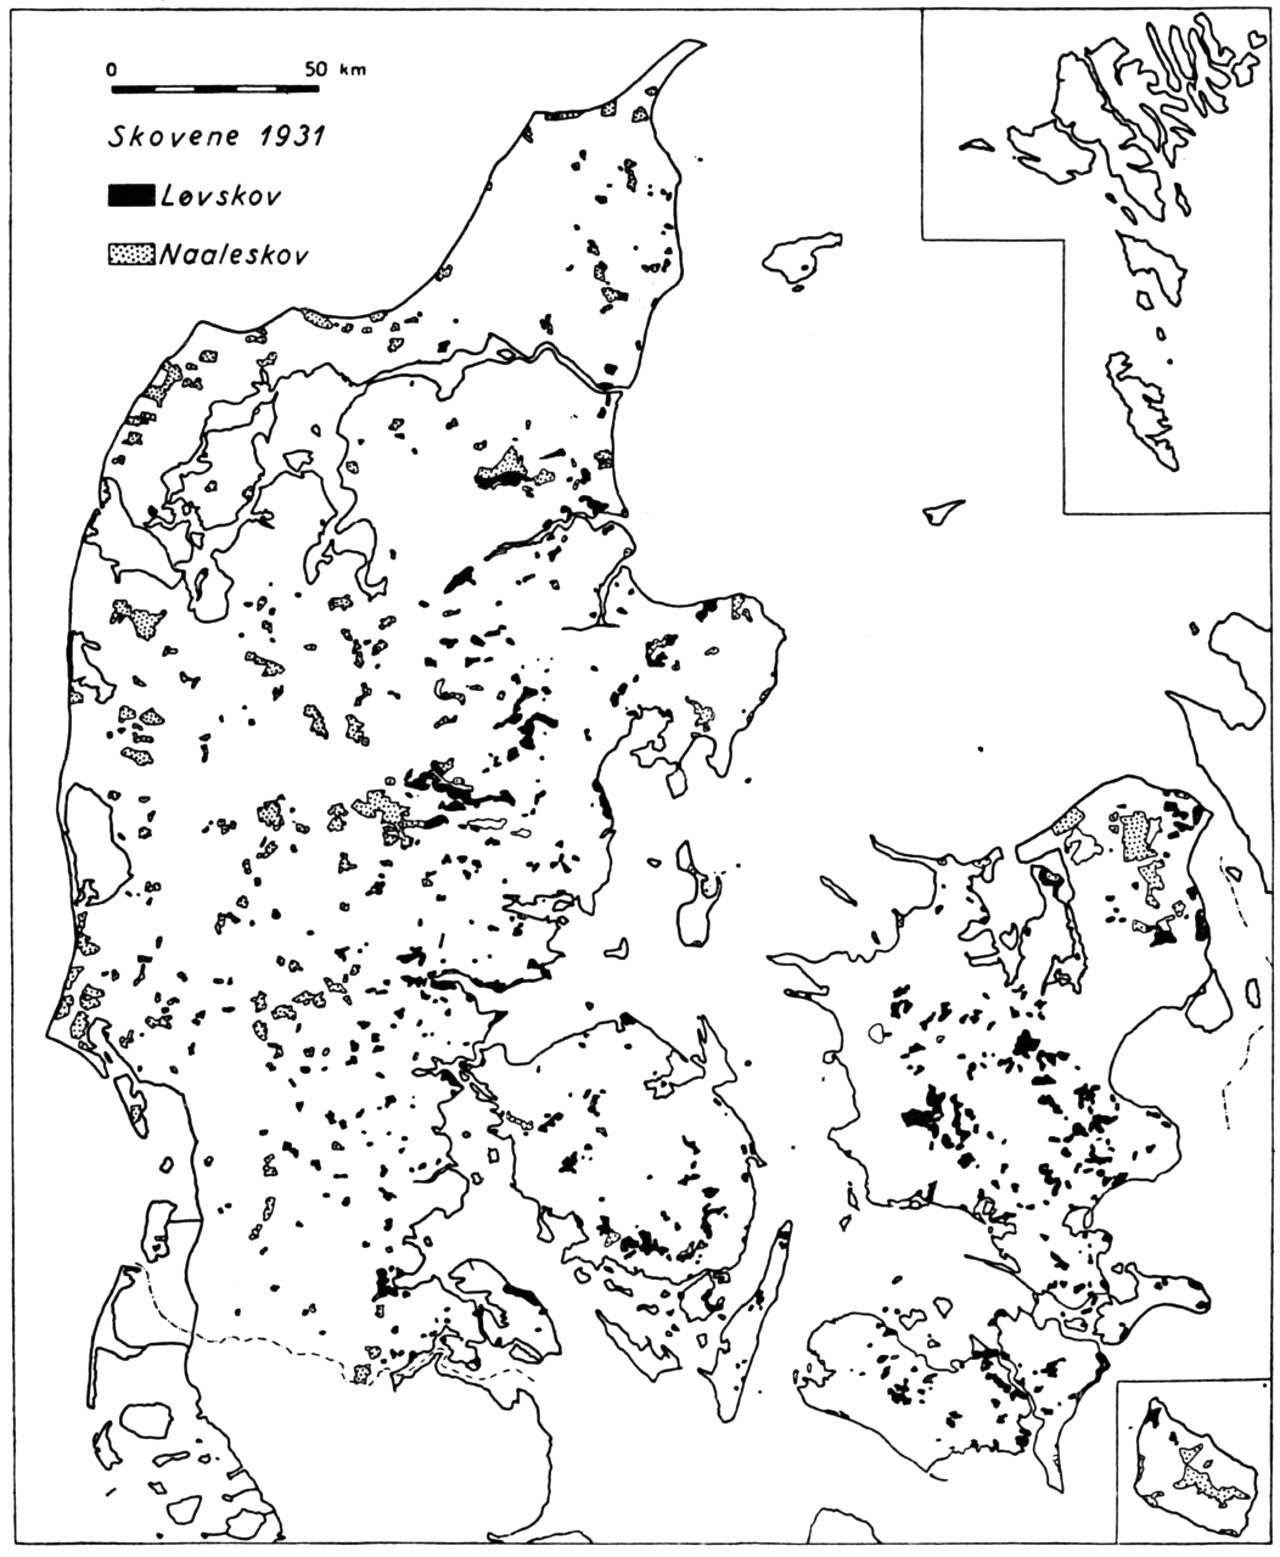 (Kort). Skovene 1931.Skovene er mere jævnt udbredt over hele landet. Den store tilvækst i areal skyldes hedearealers opdyrkning ved plantering af nåleskov og anlæg af sandflugtplantager i klitområderne. De gamle skovarealer er til gengæld mange steder opsplittede ved inddragelse af skovland til landbrugsareal fx. på Lolland og i SØ.-Jylland.Københavns Universitets Geografiske Laboratorium del.